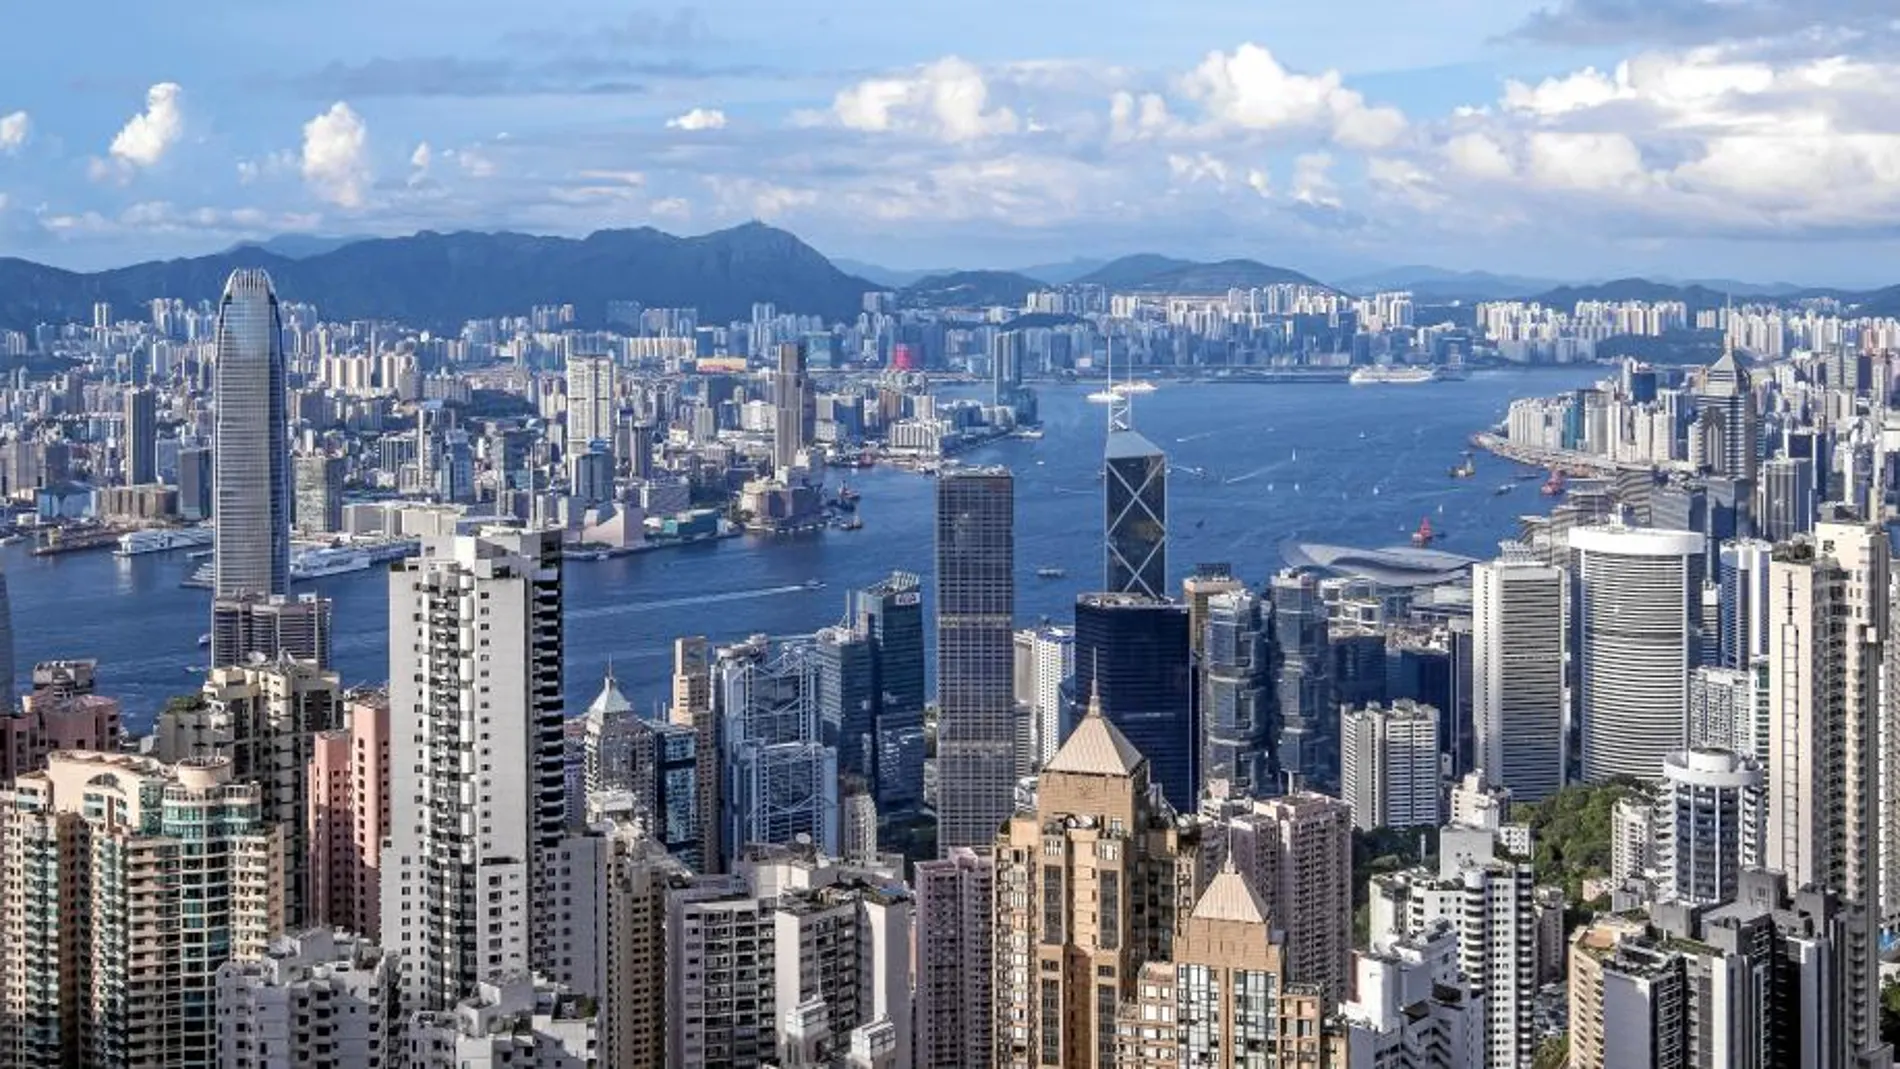 Vista aérea de la ciudad de Hong Kong